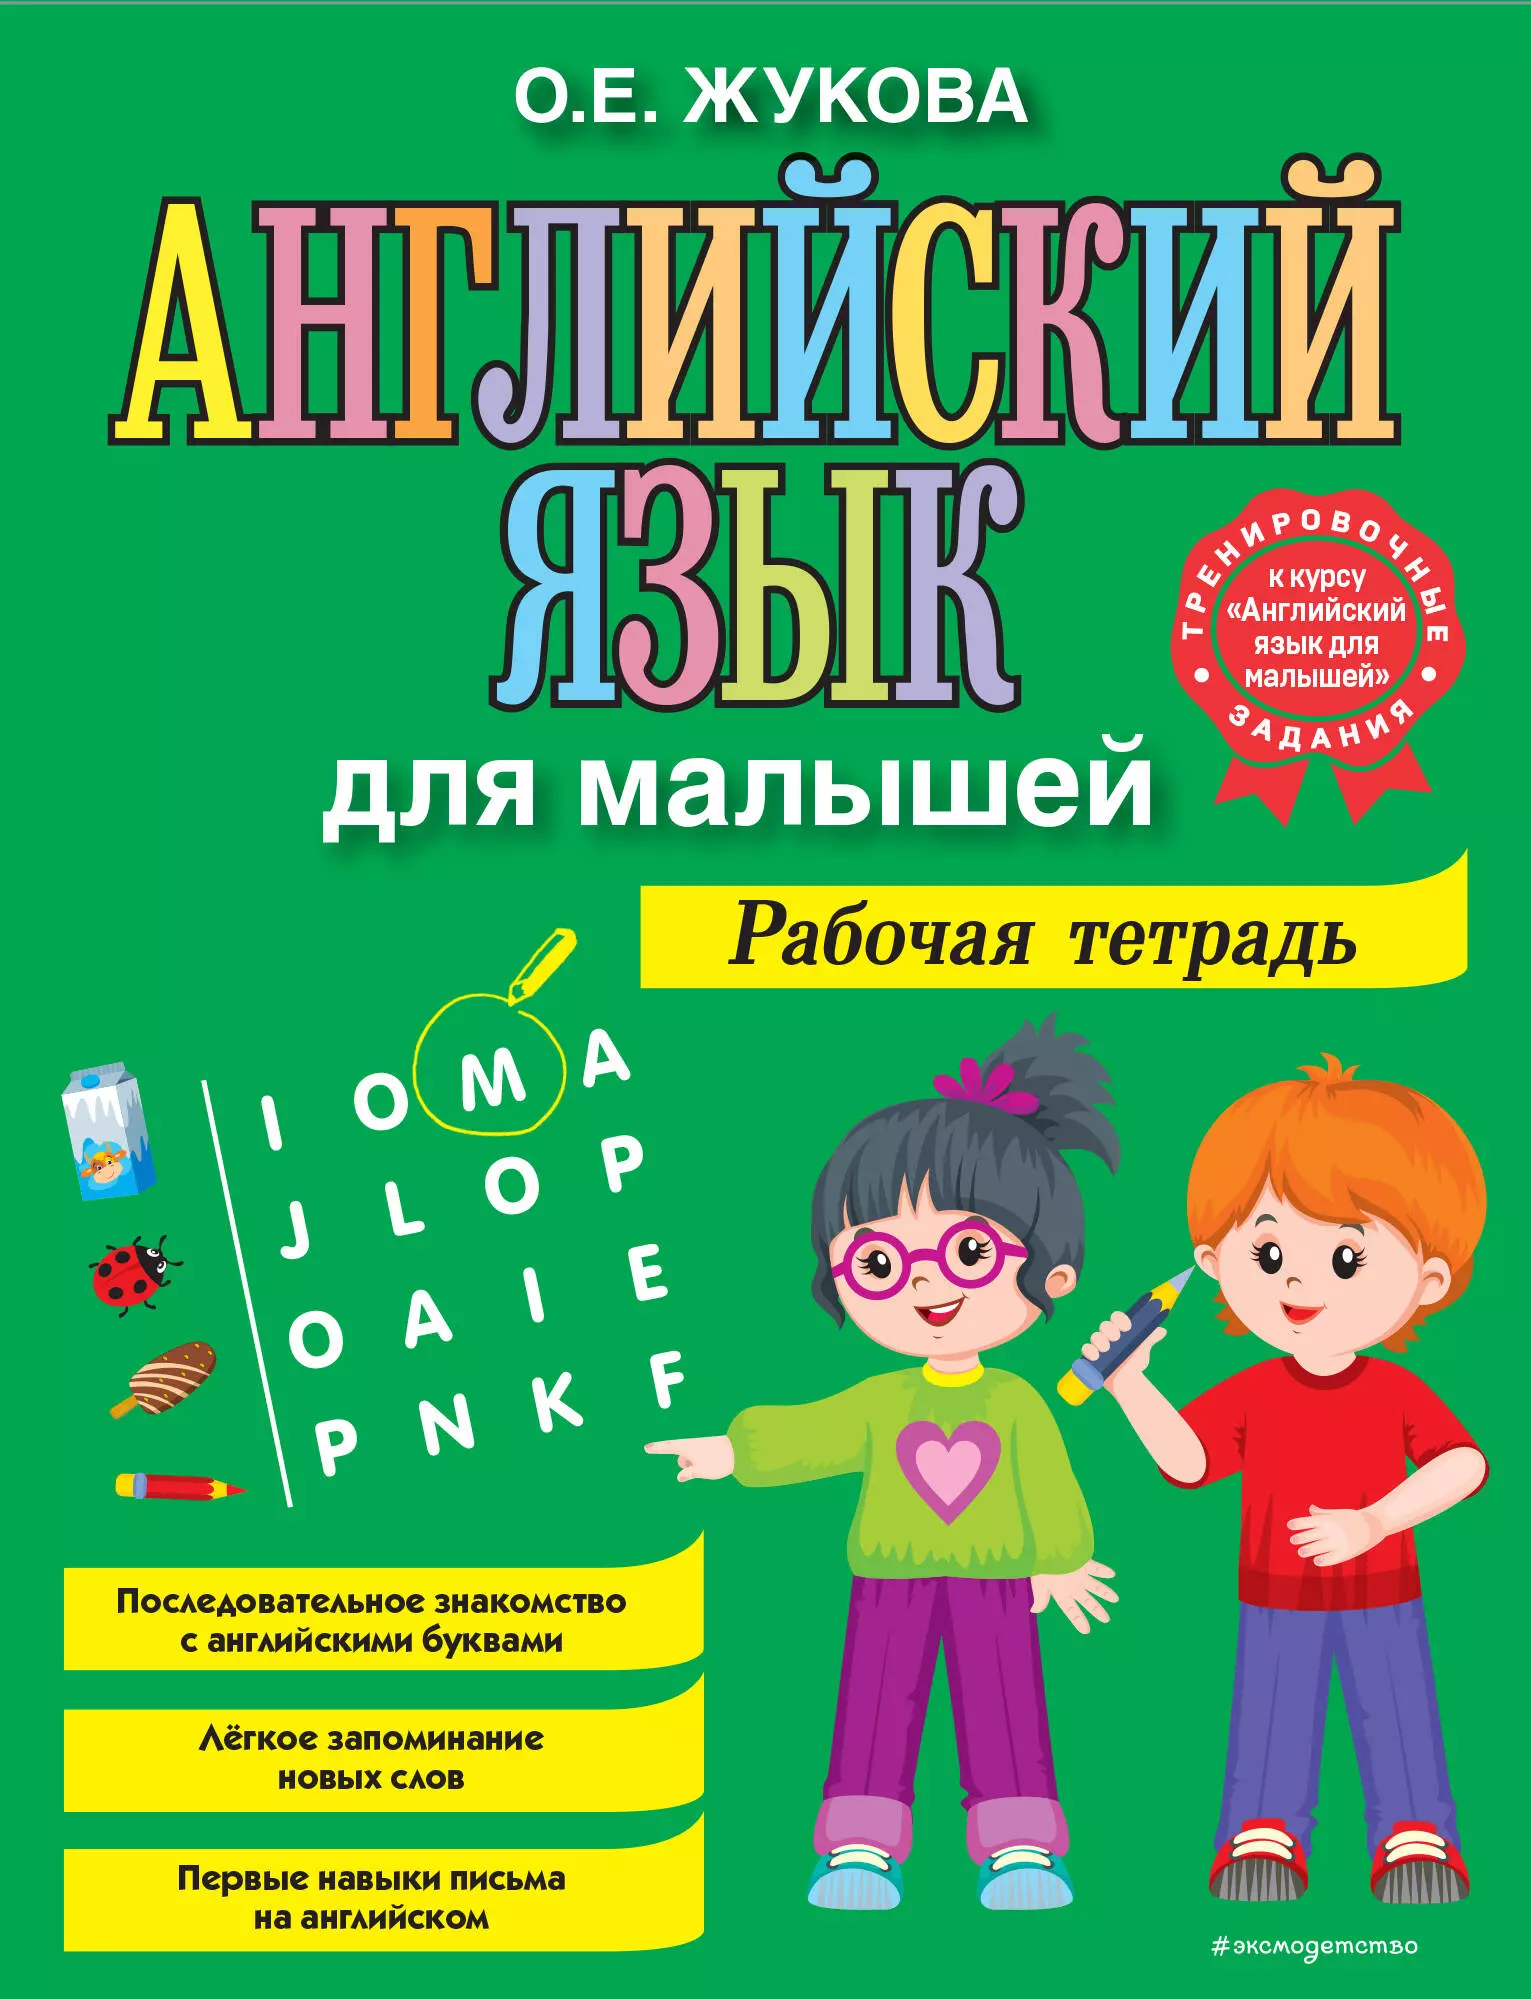 Жукова Ольга Евгеньевна - Английский язык для малышей. Рабочая тетрадь